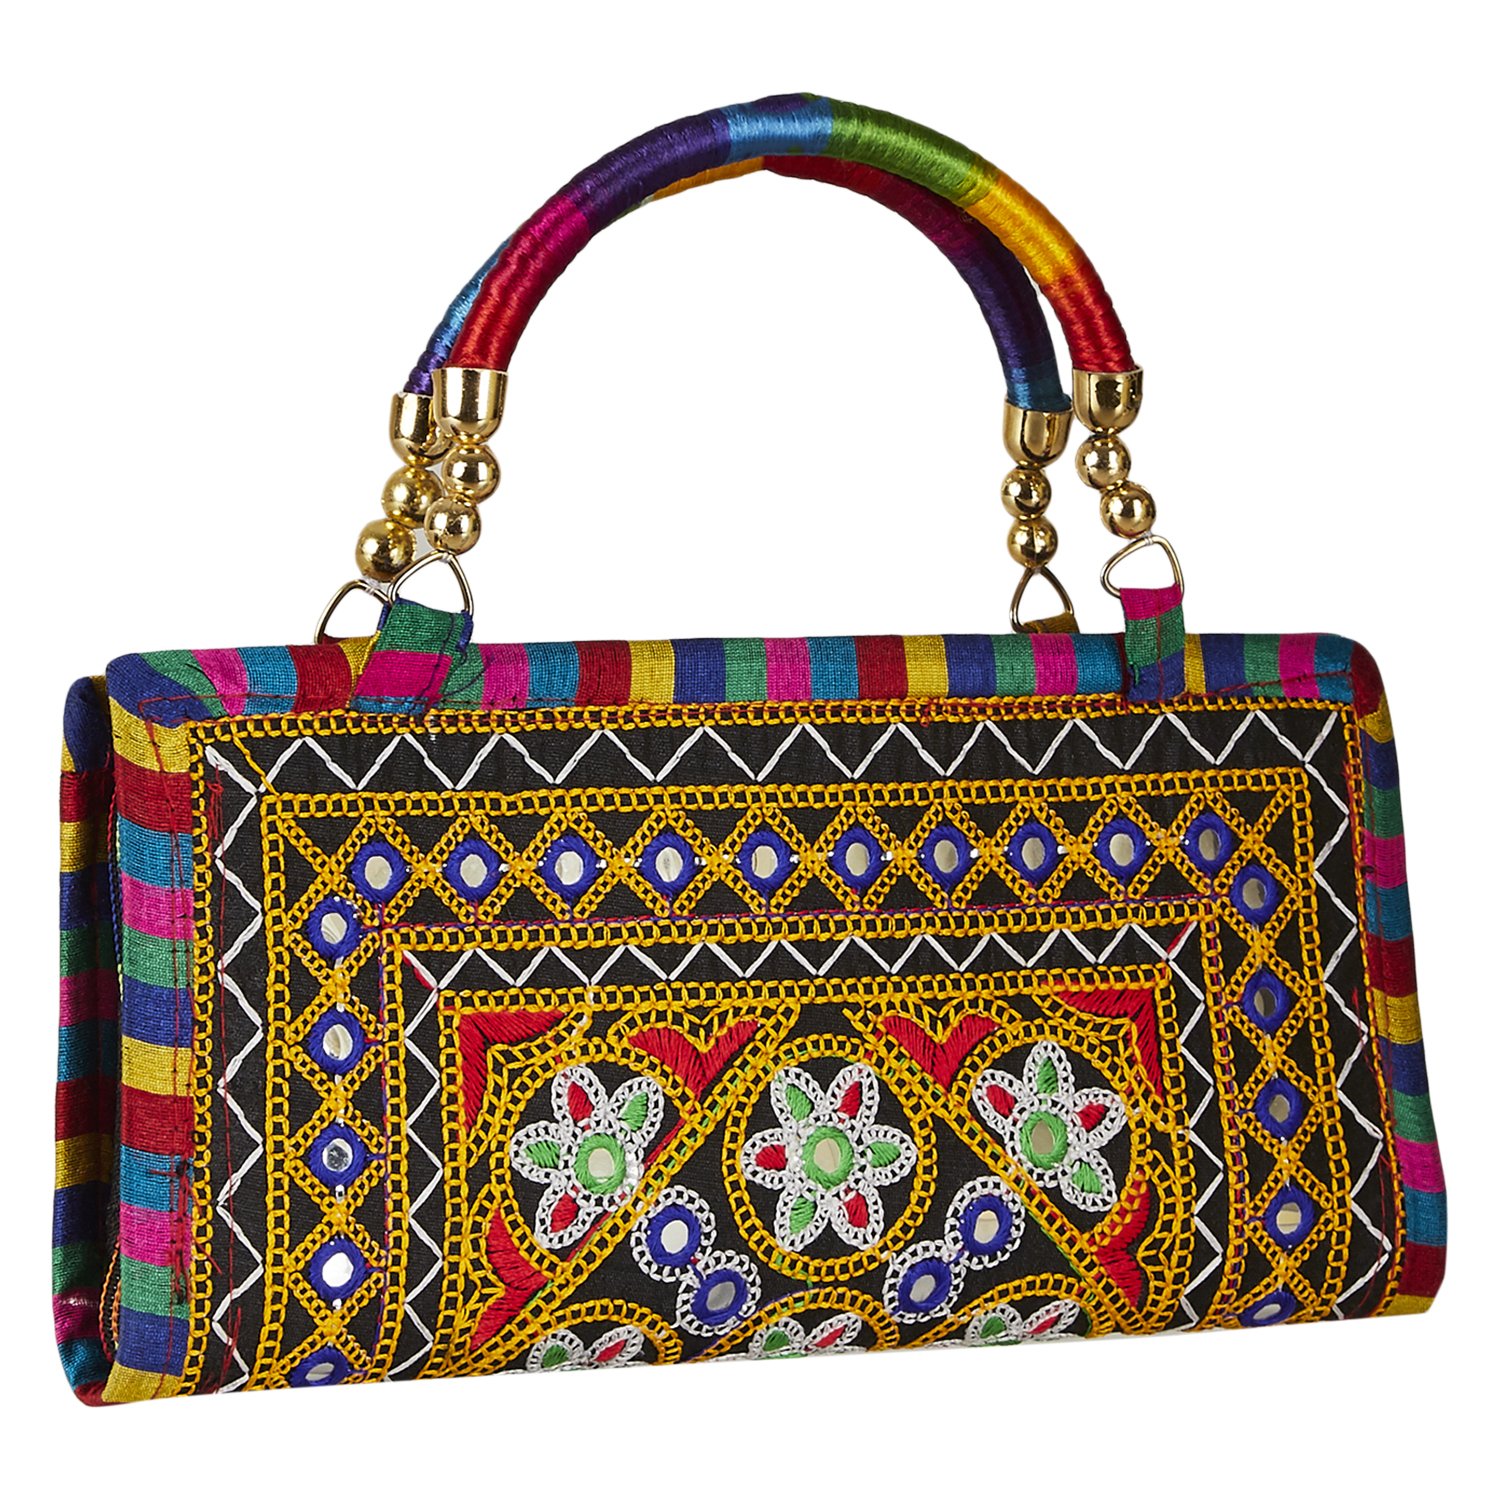 Ladies Handbags sale: कम दाम पर यहां से खरीदें ट्रेंडी और शानदार लुक वाले  ये हैंडबैग, मिल रहा है बड़ा डिस्काउंट - Fashion AajTak